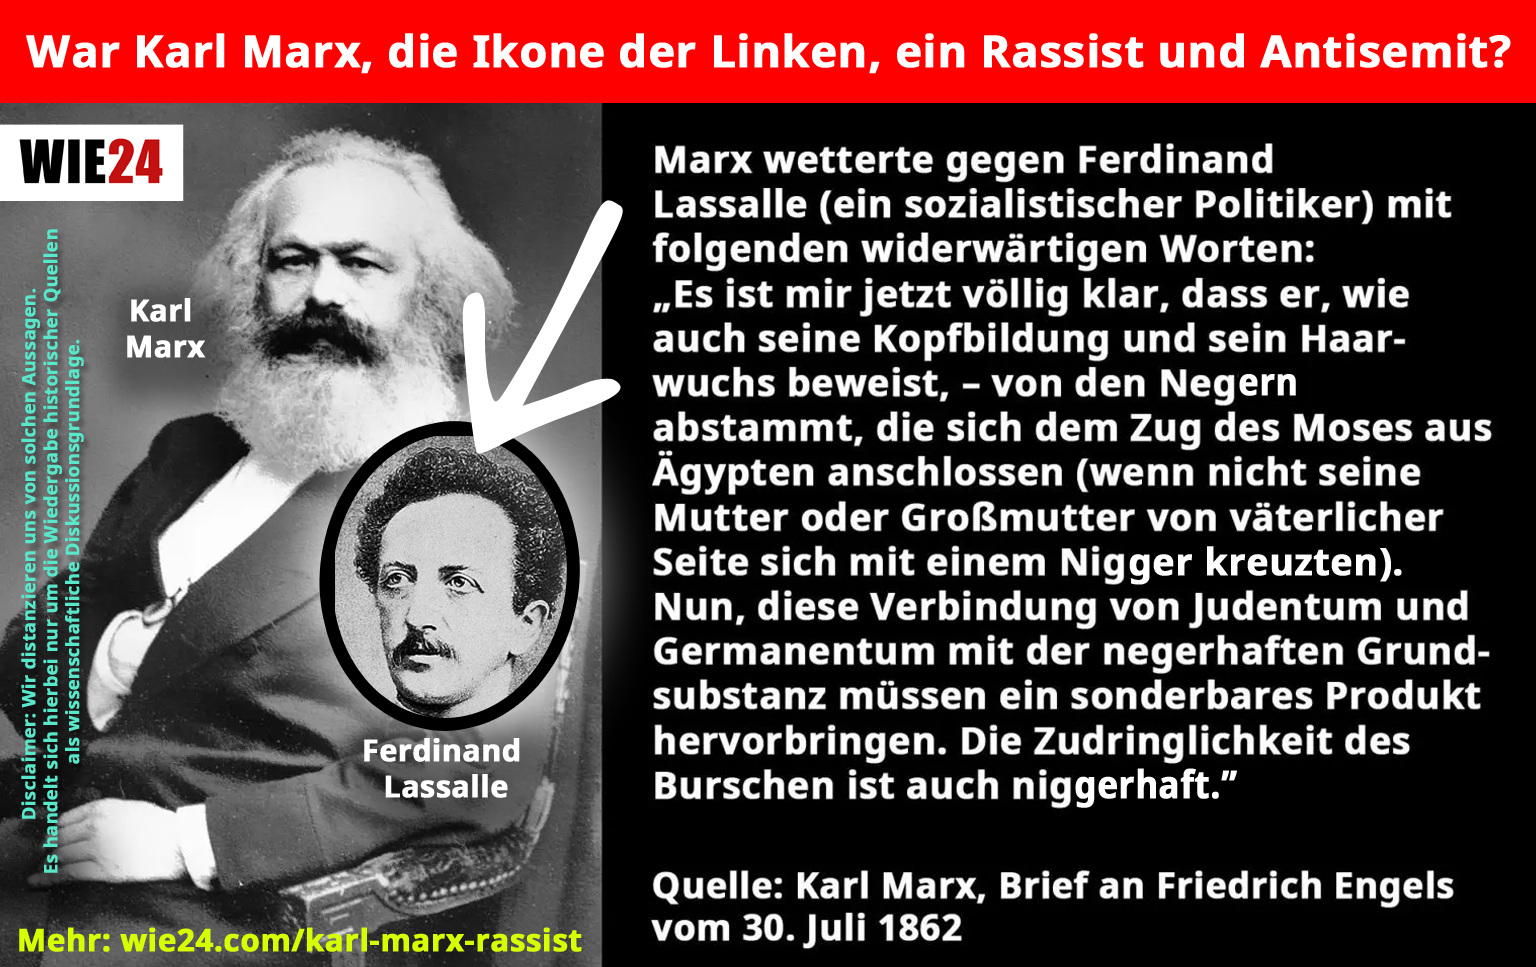 Karl Marx Rassist und Antisemit